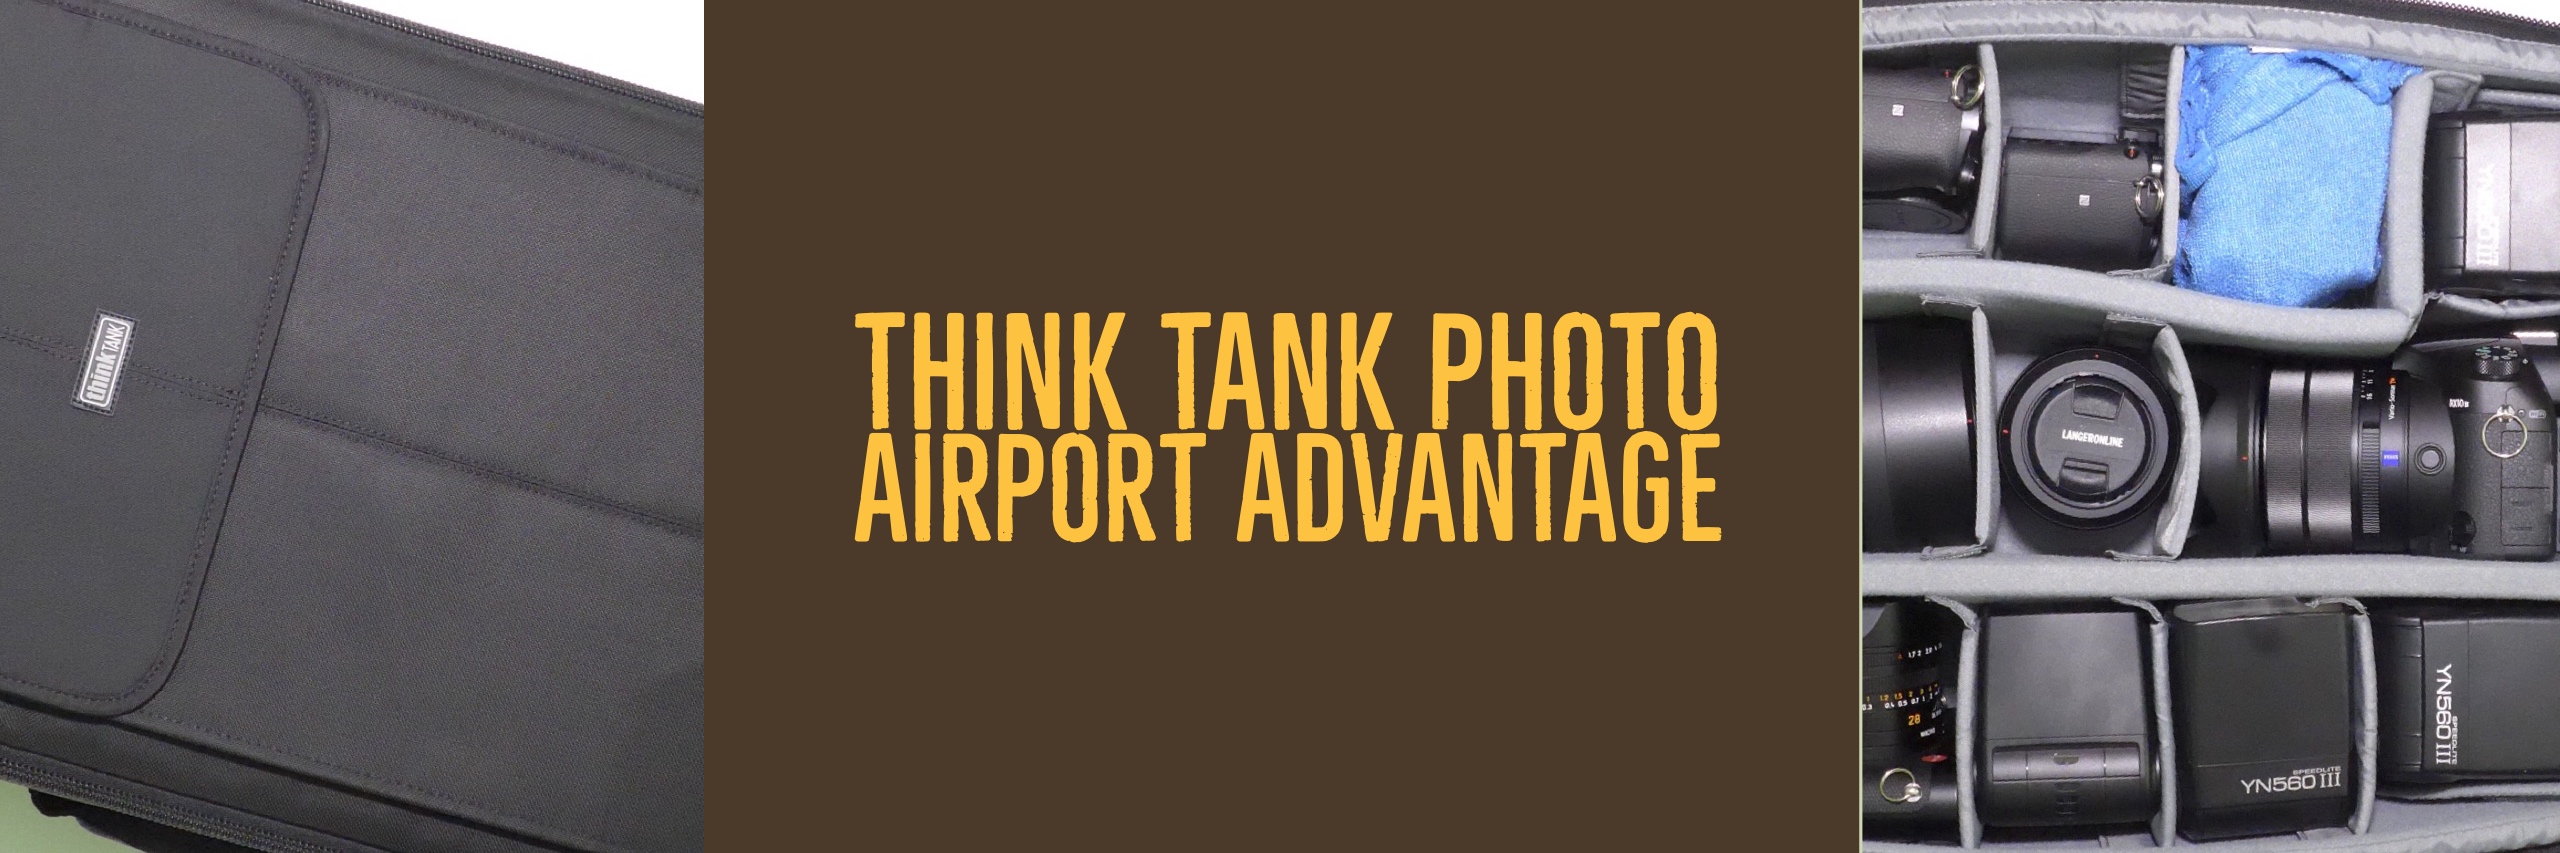 Der neue Trolley USA – der Think Tank Photo Airport Advantage